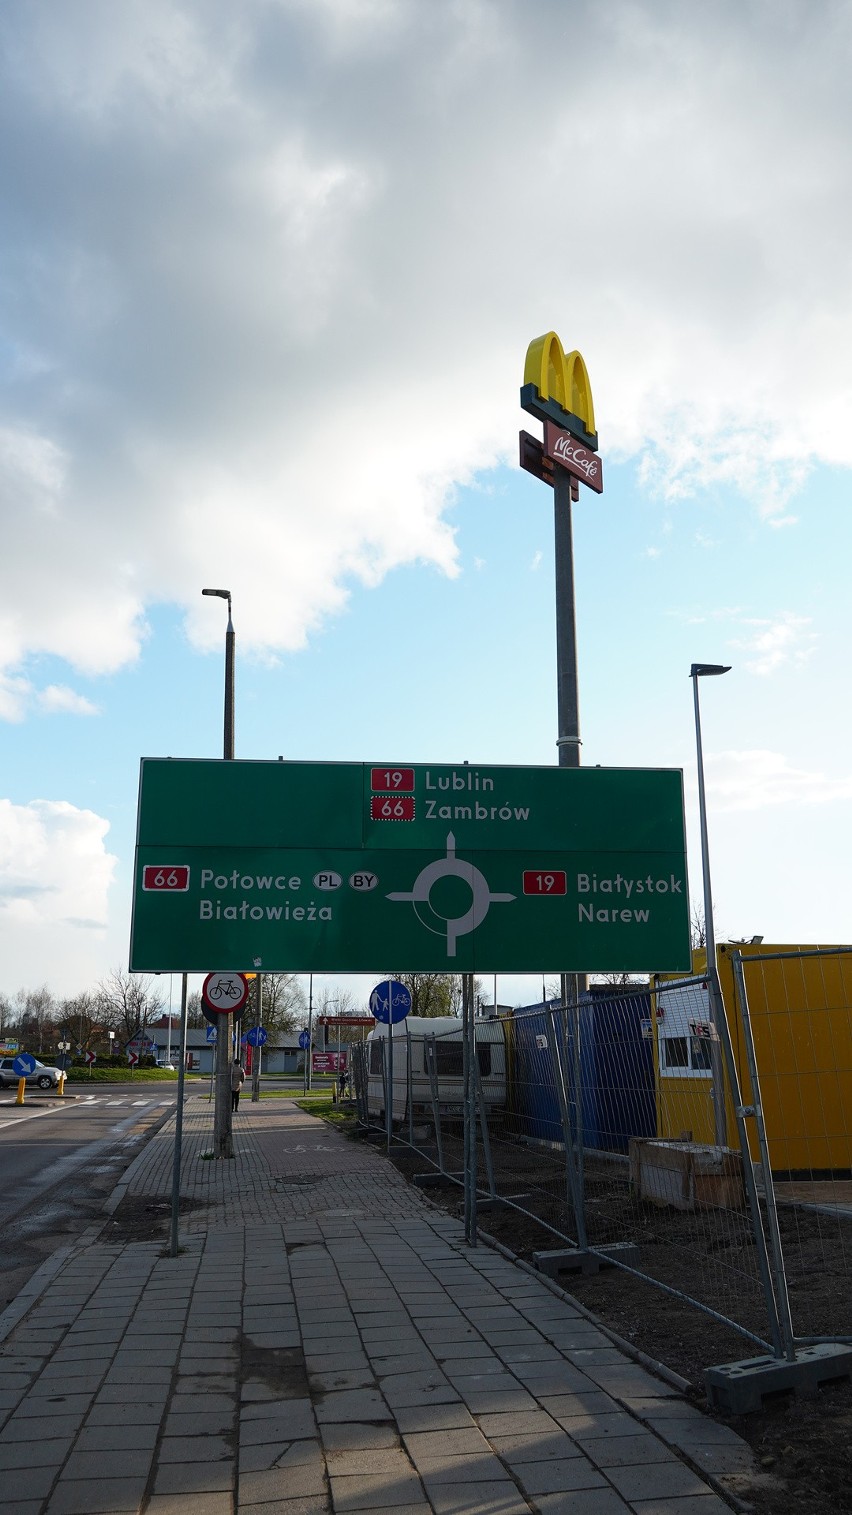 Nowy McDonald's w Bielsku Podlaskim. Budowa restauracji zbliża się do końca. Jest już maszt z charakterystycznym logo [ZDJĘCIA, WIDEO]